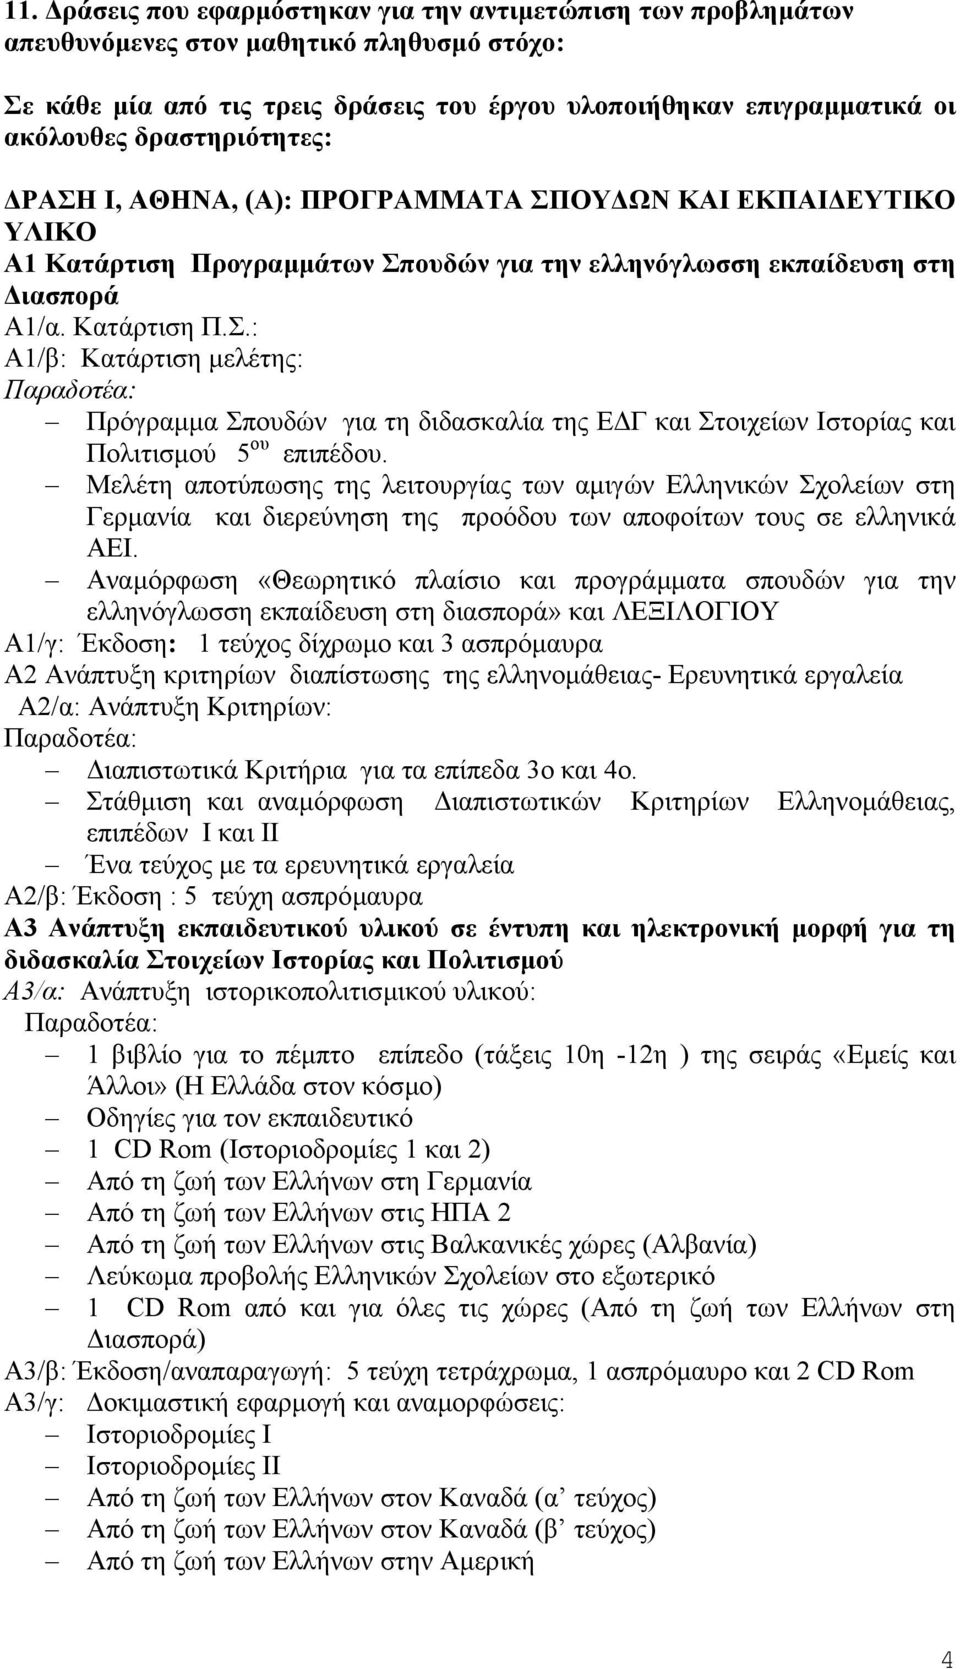 Μελέτη αποτύπωσης της λειτουργίας των αµιγών Ελληνικών Σχολείων στη Γερµανία και διερεύνηση της προόδου των αποφοίτων τους σε ελληνικά ΑΕΙ.